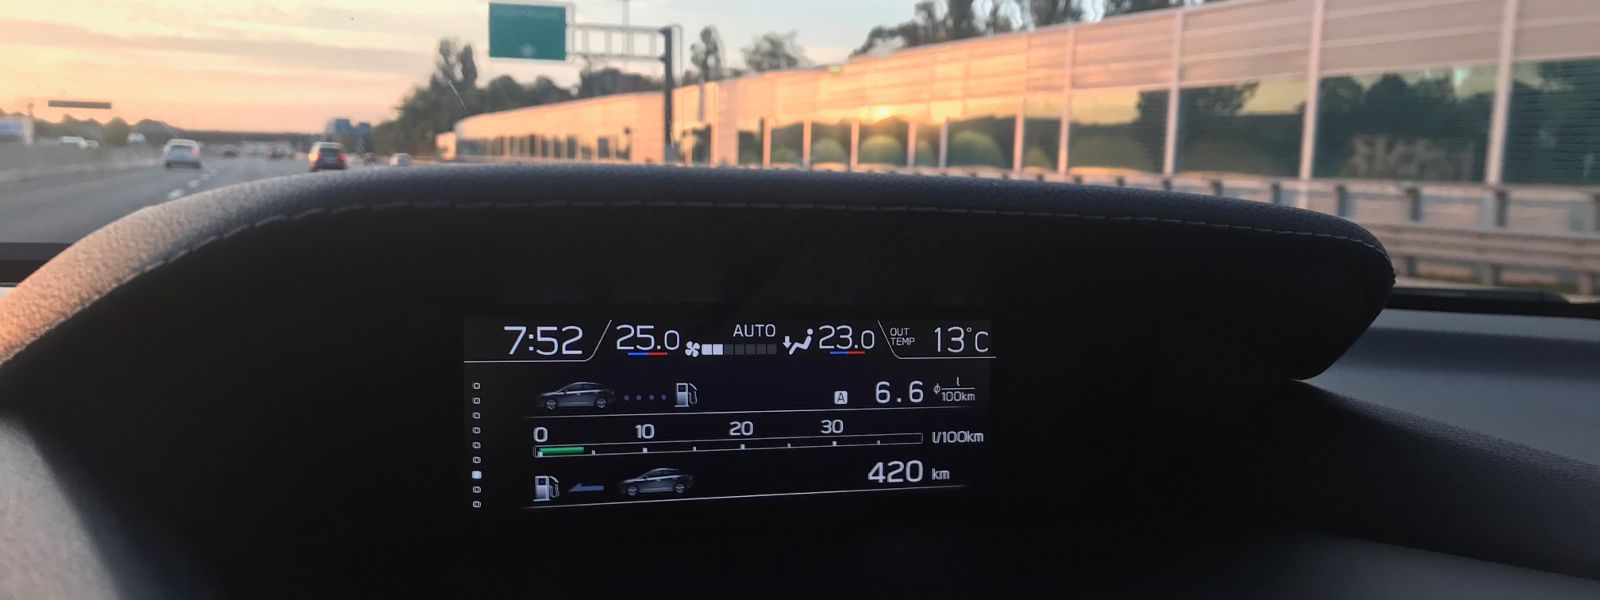 Subaru Impreza e-Boxer consumi reali e veri testati su 2500 chilometri